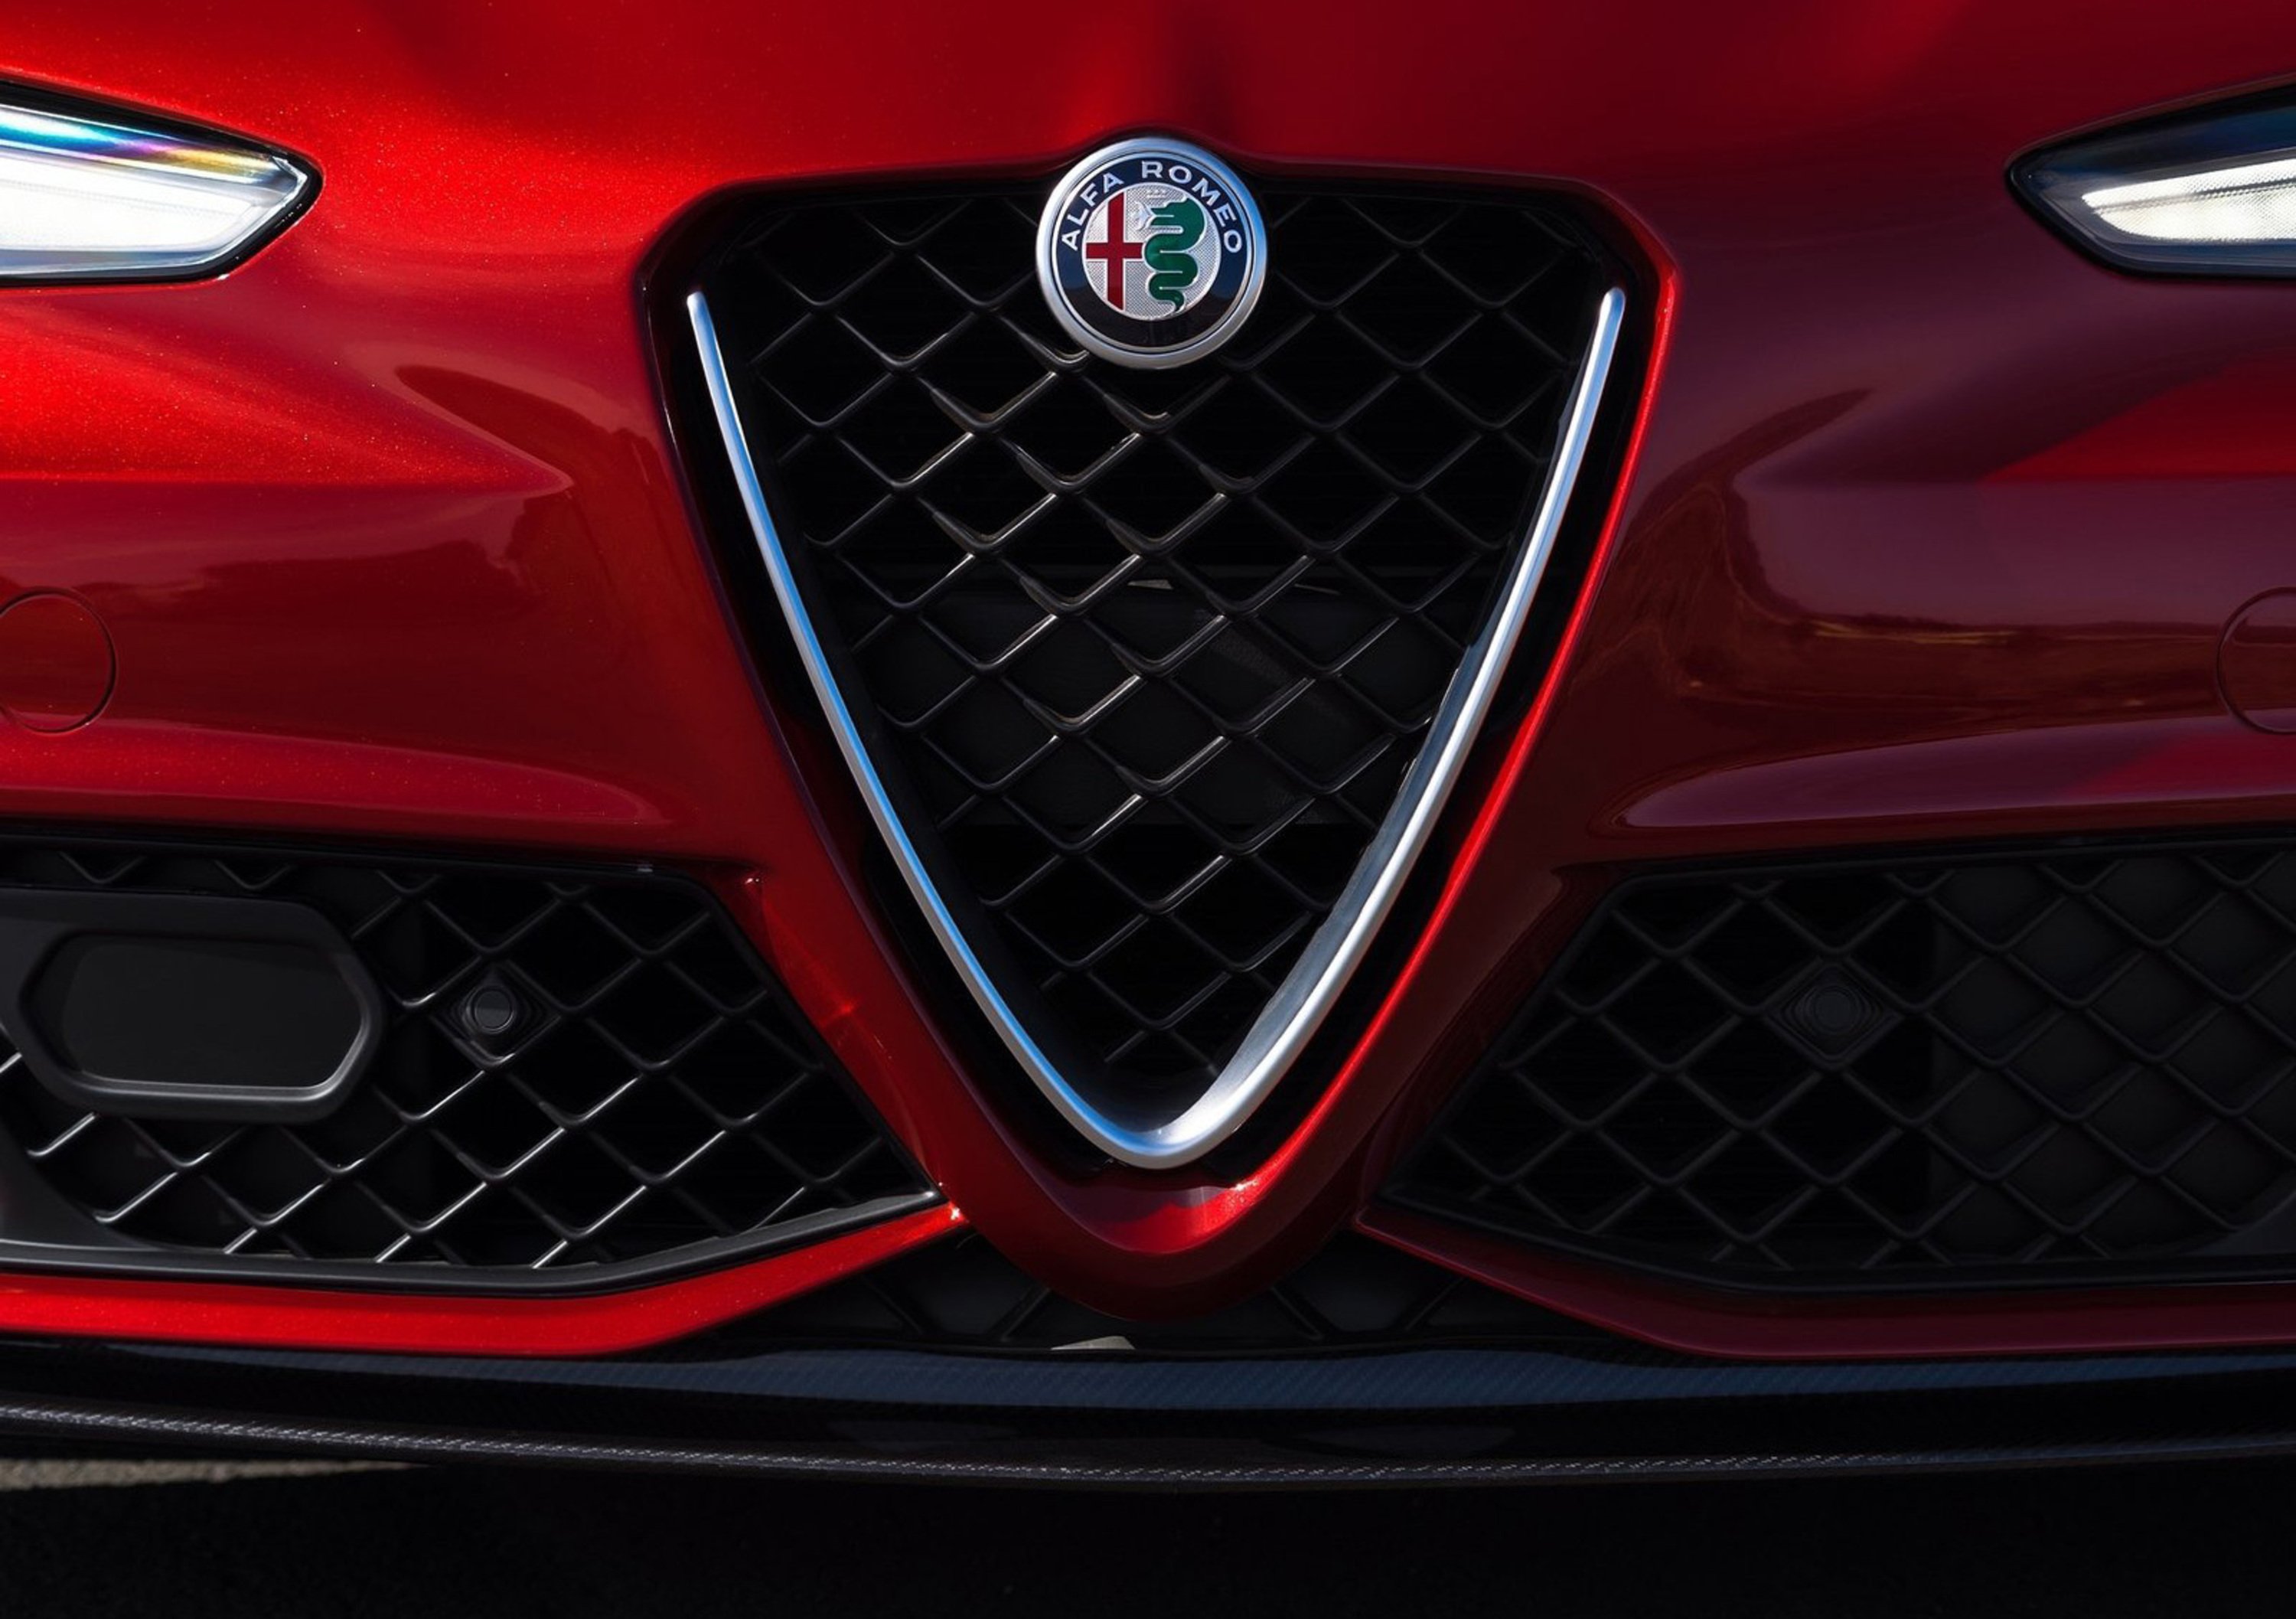 Alfa Romeo Giulietta a trazione posteriore? Sarebbe uno smacco per i Tedeschi